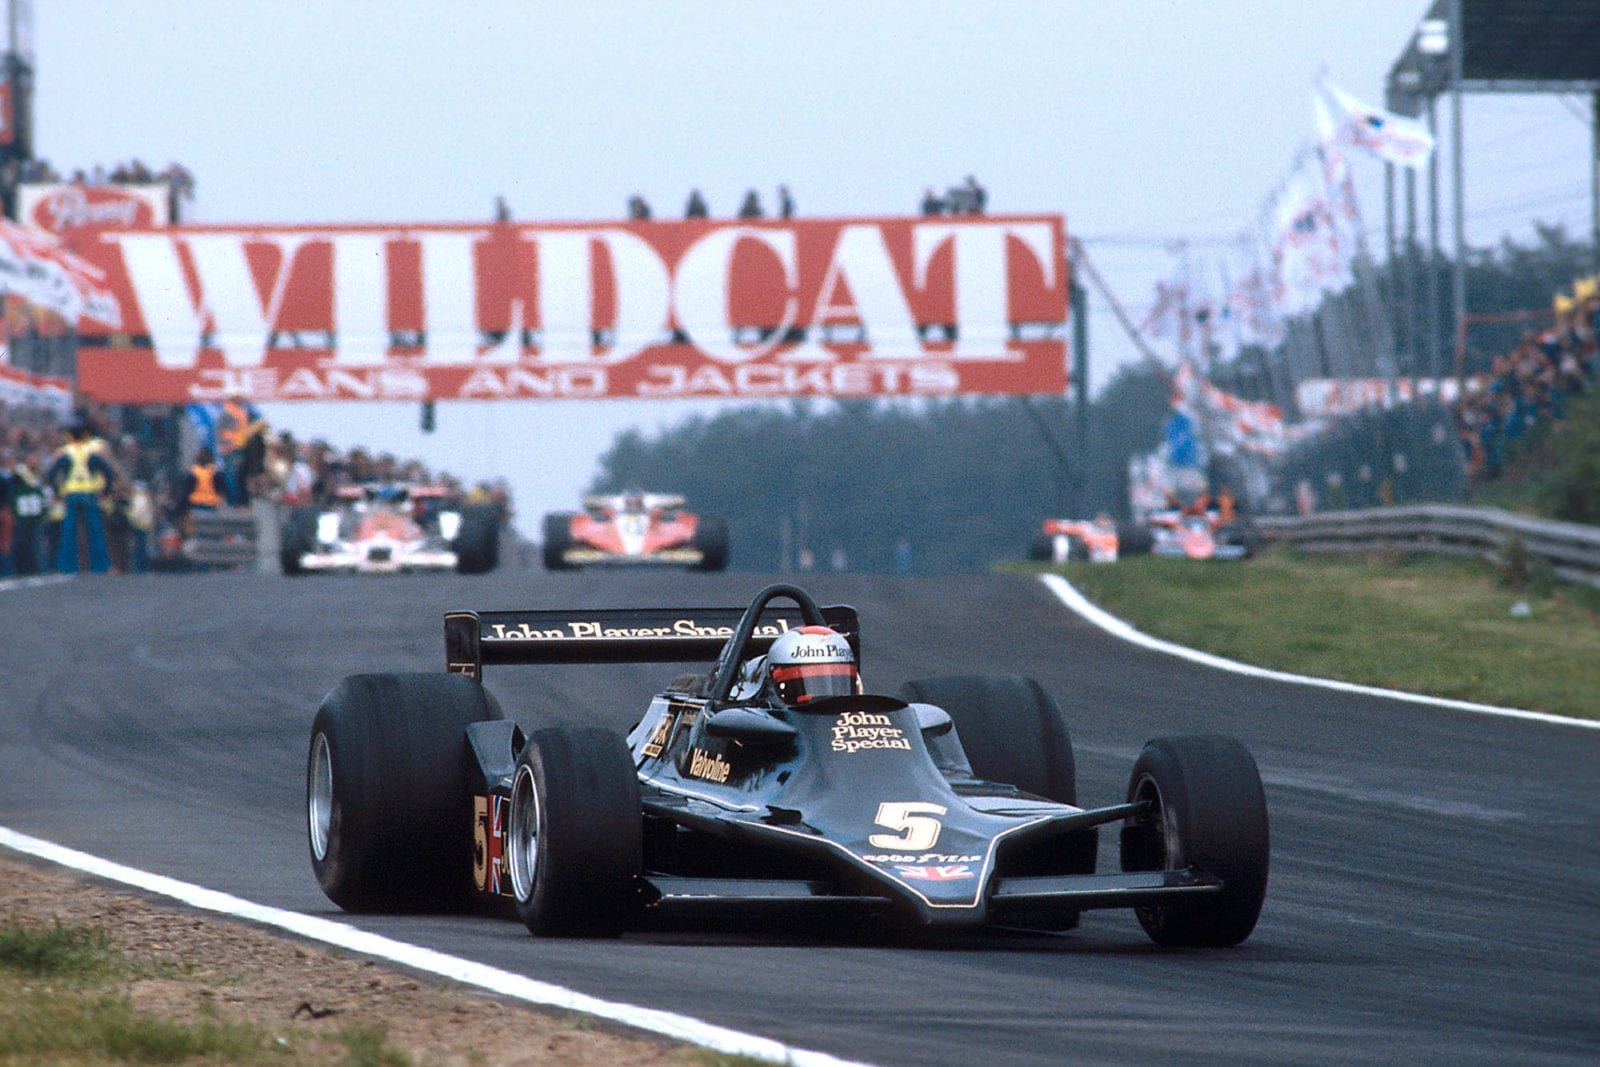 Mario Andretti (Lotus) driving at the 1978 Belgian Grand Prix, Zolder.